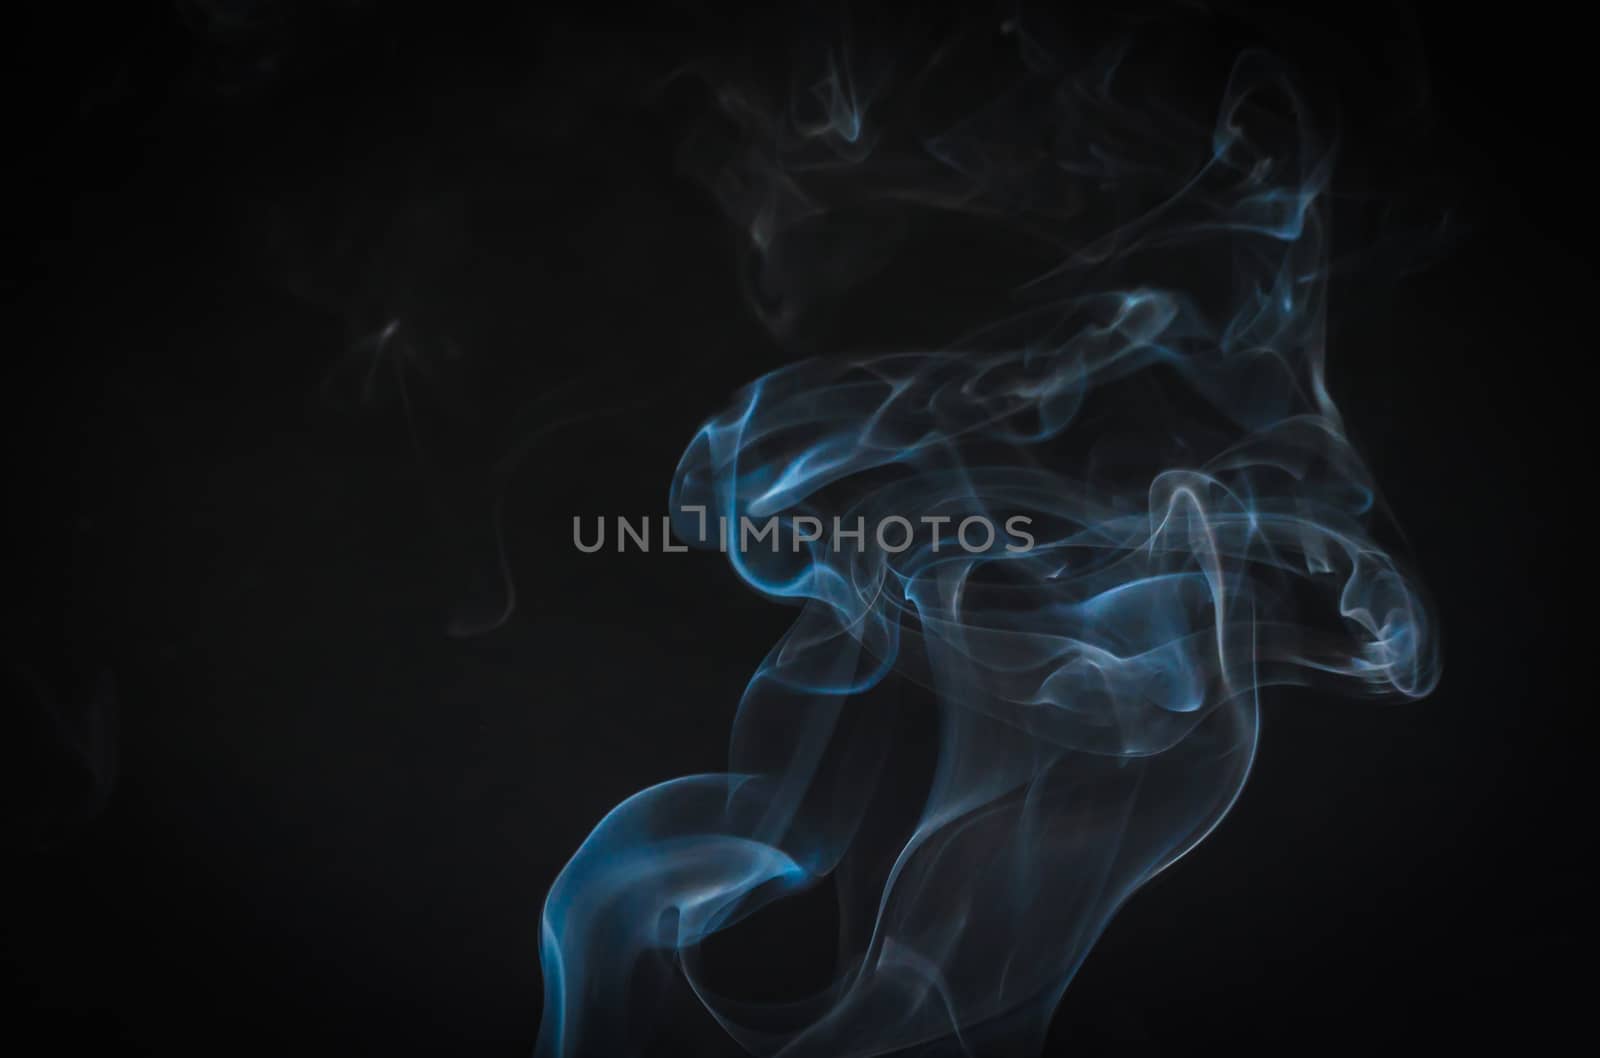 Beautiful of smoke movement as art